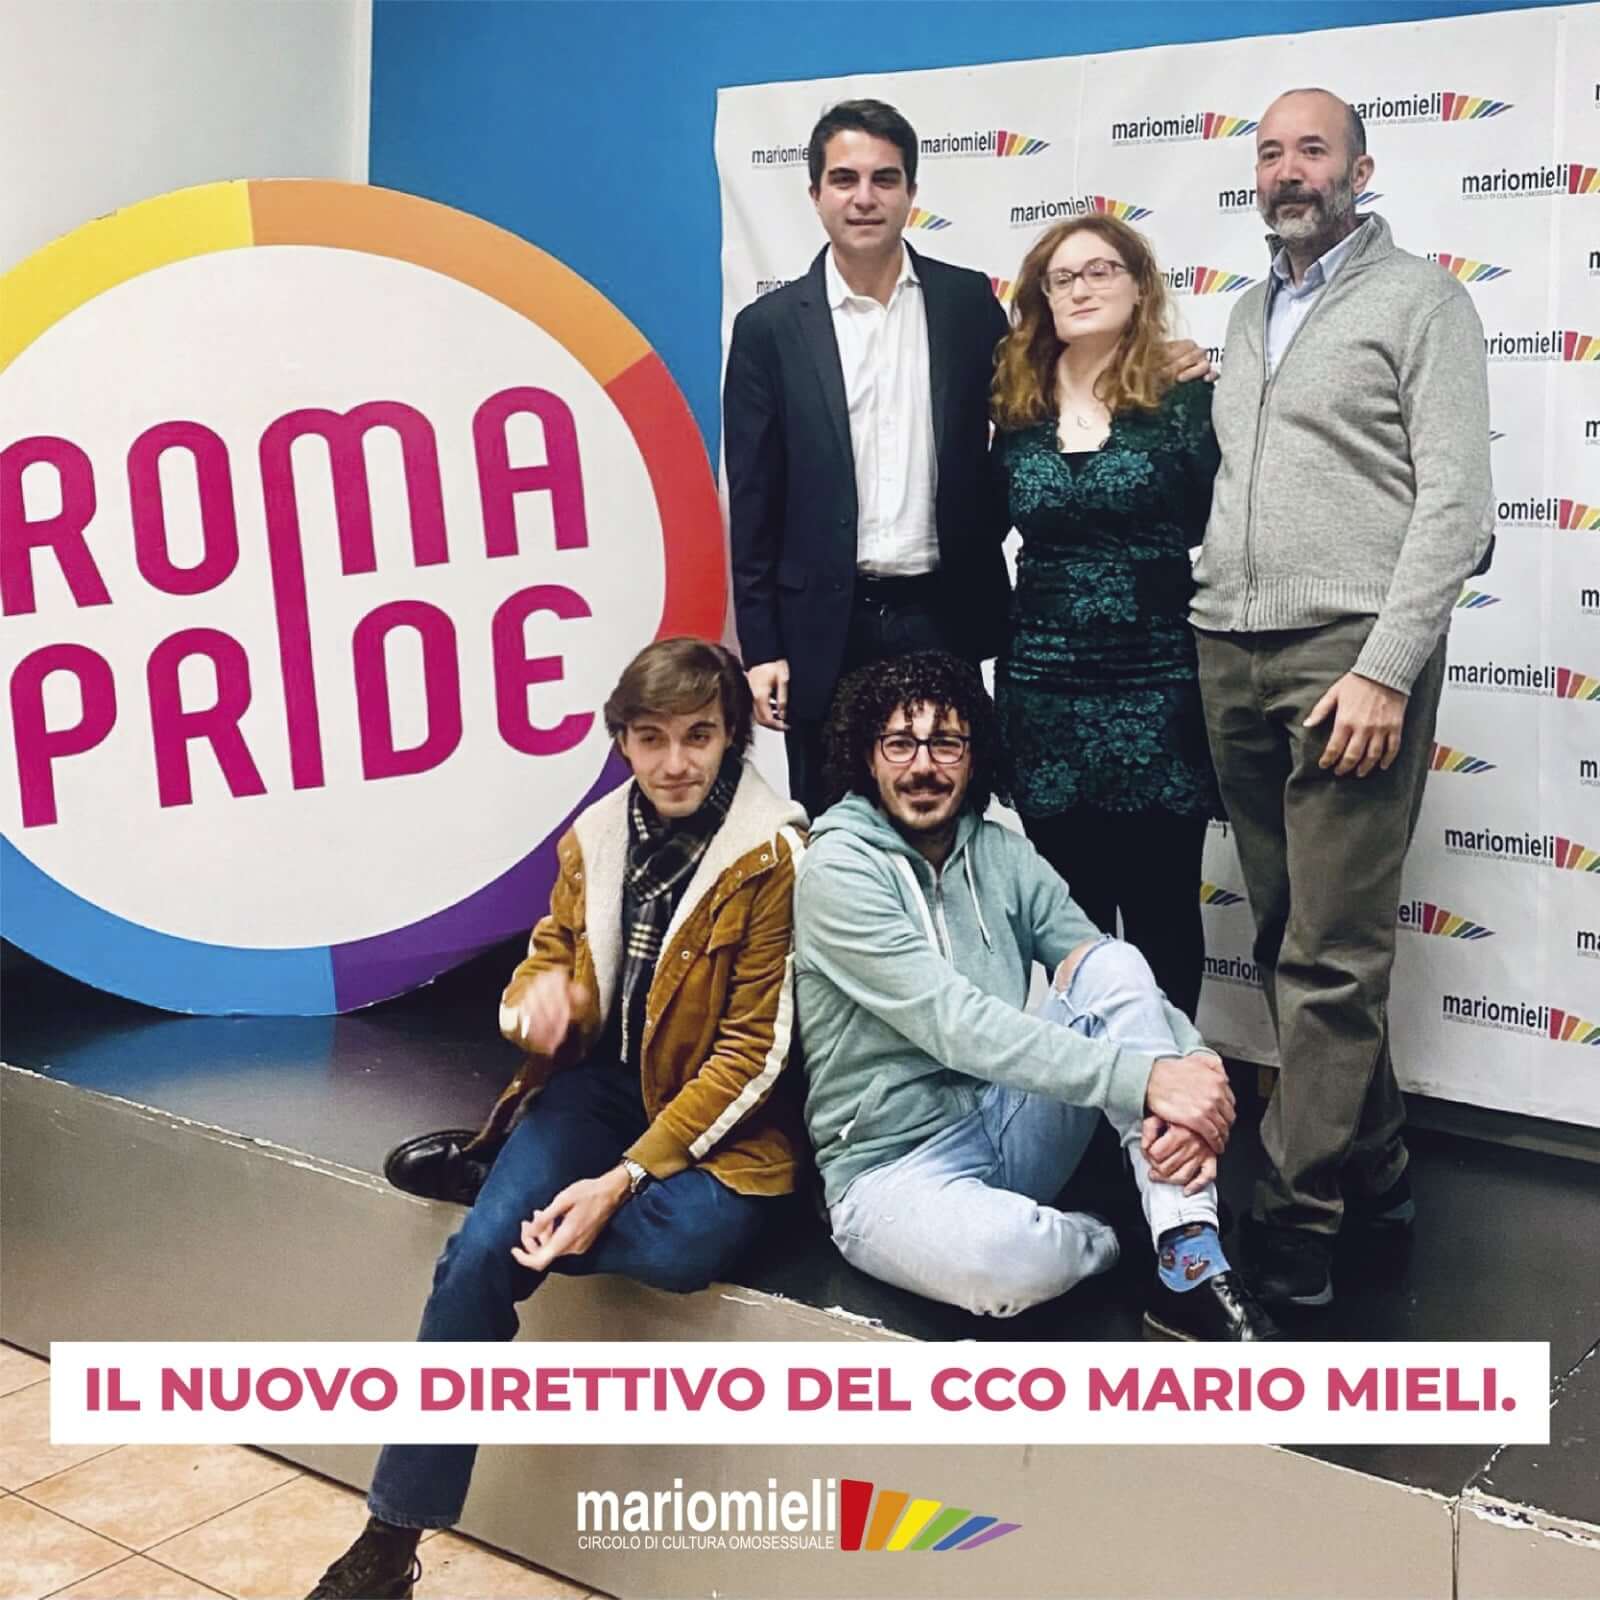 Intervista a Colamarino, presidente Mario Mieli: "Movimento ricompattato, ora matrimoni e adozioni" - Mario Mieli - Gay.it